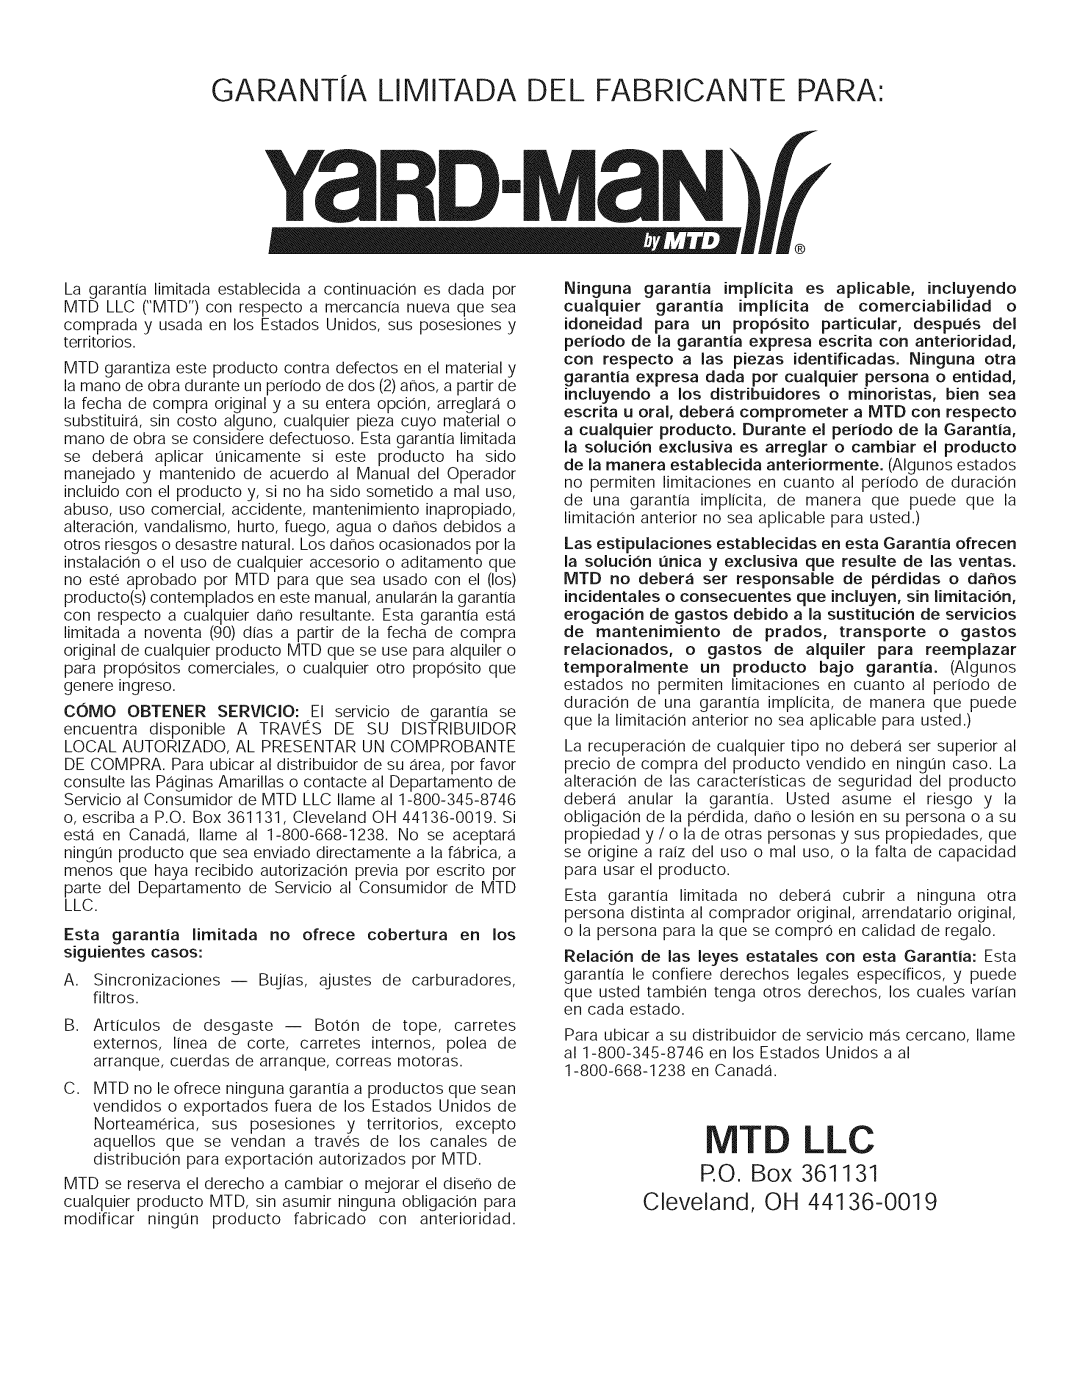 Yard-Man 769.01408 manual GARANTiA LIMITADA DEL FABRICANTE PARA, Mtd Llc, P.O. Box 